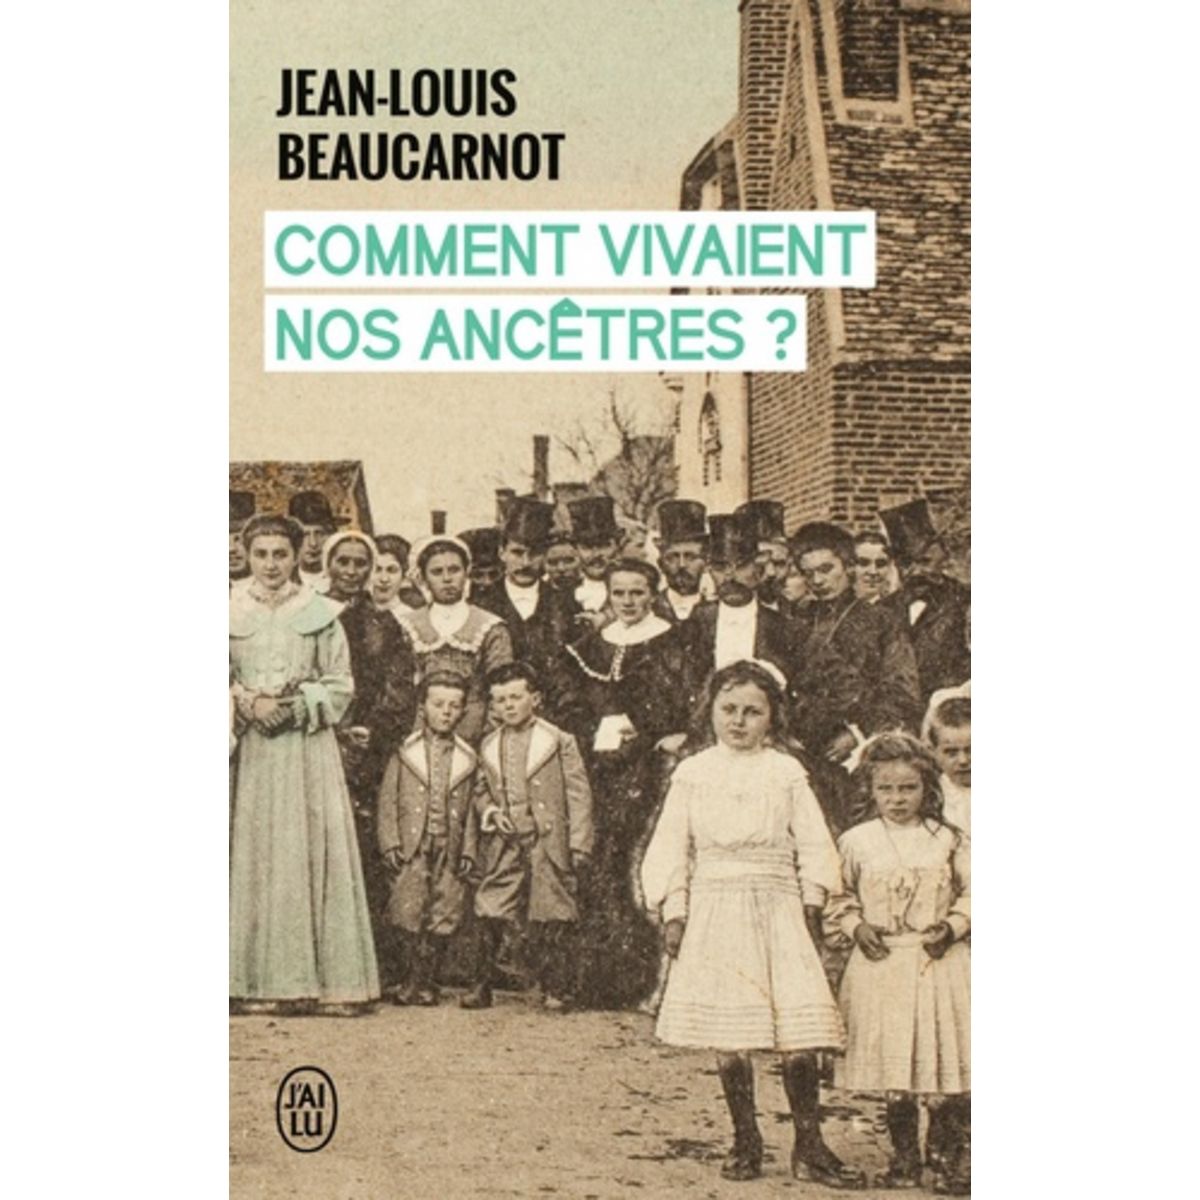  COMMENT VIVAIENT NOS ANCETRES ?, Beaucarnot Jean-Louis